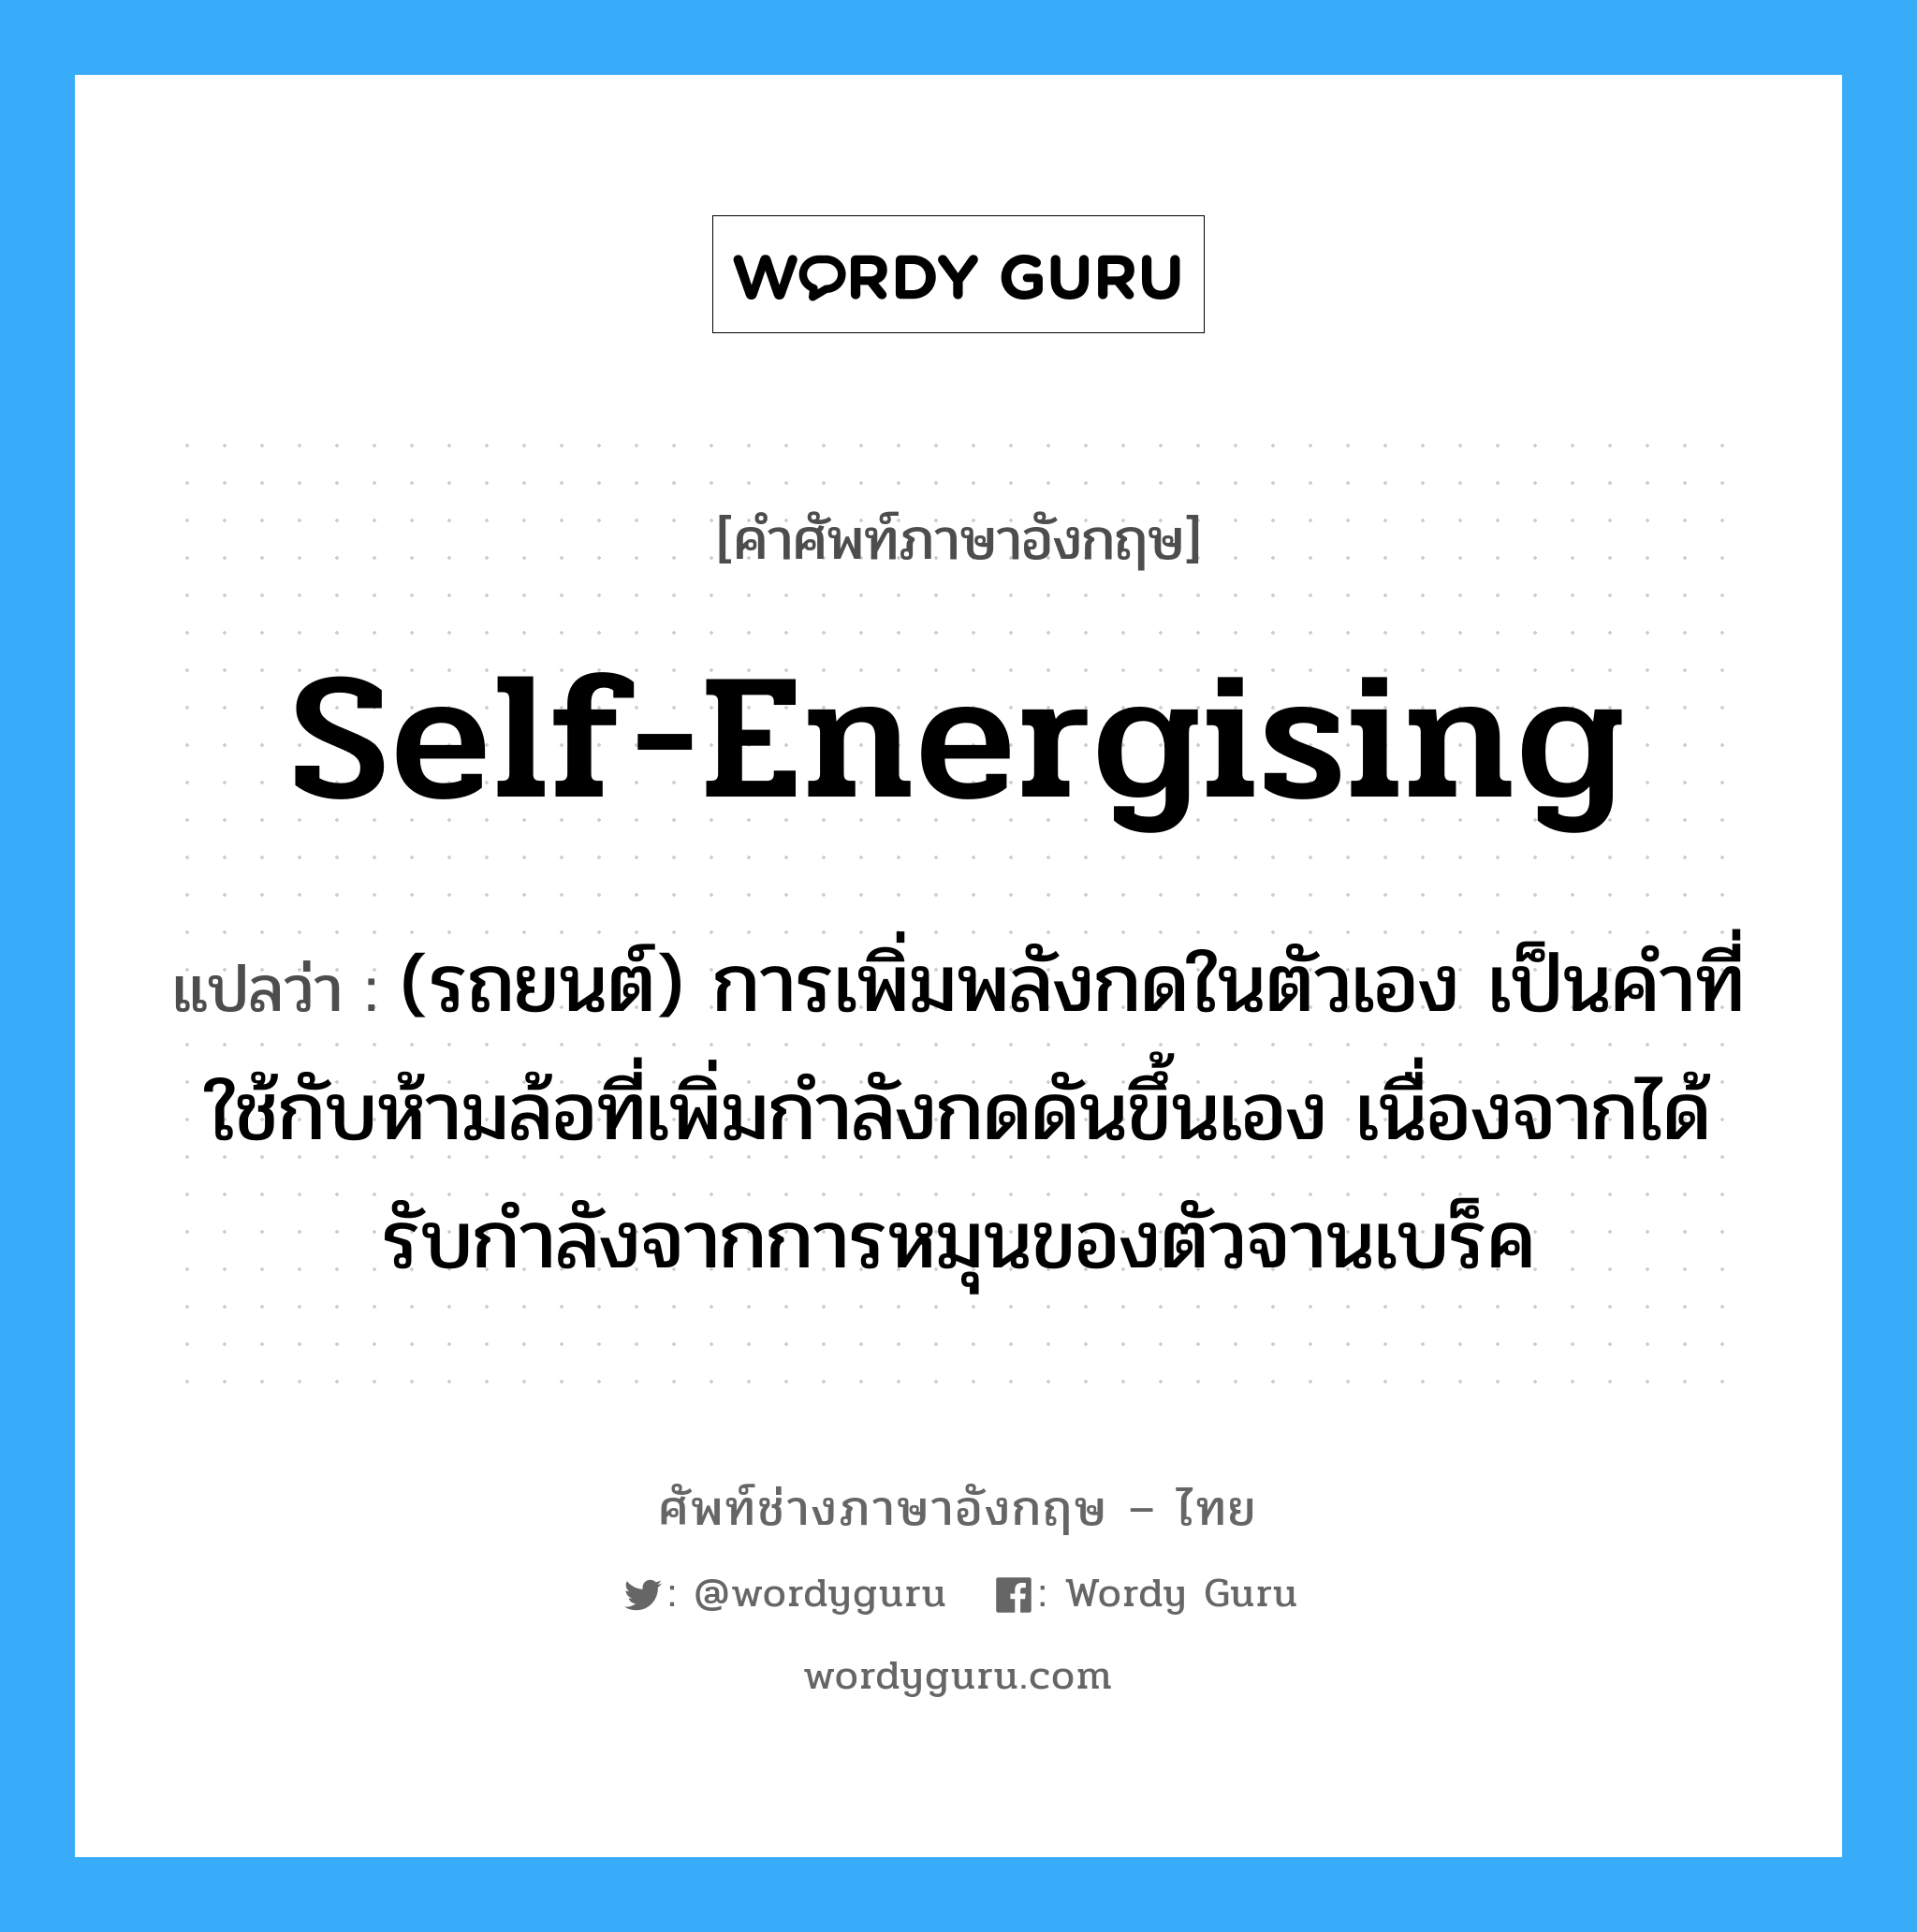 self-energising แปลว่า?, คำศัพท์ช่างภาษาอังกฤษ - ไทย self-energising คำศัพท์ภาษาอังกฤษ self-energising แปลว่า (รถยนต์) การเพิ่มพลังกดในตัวเอง เป็นคำที่ใช้กับห้ามล้อที่เพิ่มกำลังกดดันขึ้นเอง เนื่องจากได้รับกำลังจากการหมุนของตัวจานเบร็ค